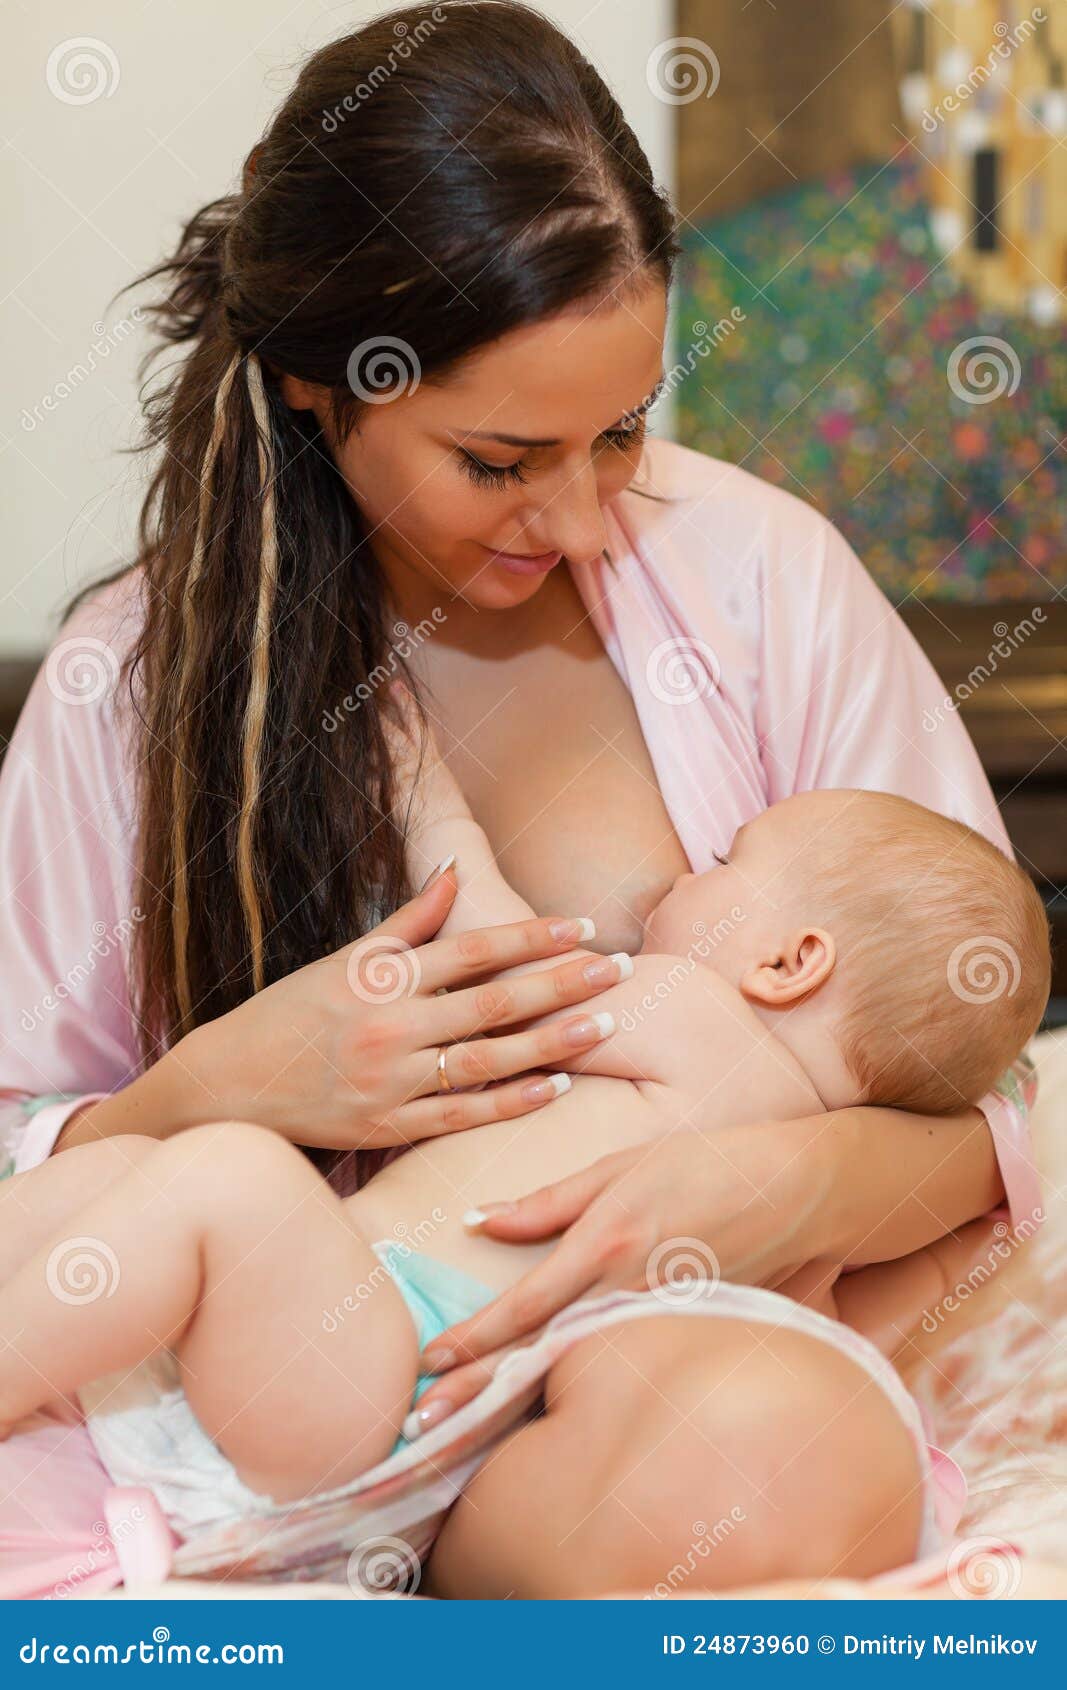 Мама с большой грудью дочь. Кормление грудью. Женщина кормит ребенка. Кормит грудью. Грудное вскармливание.